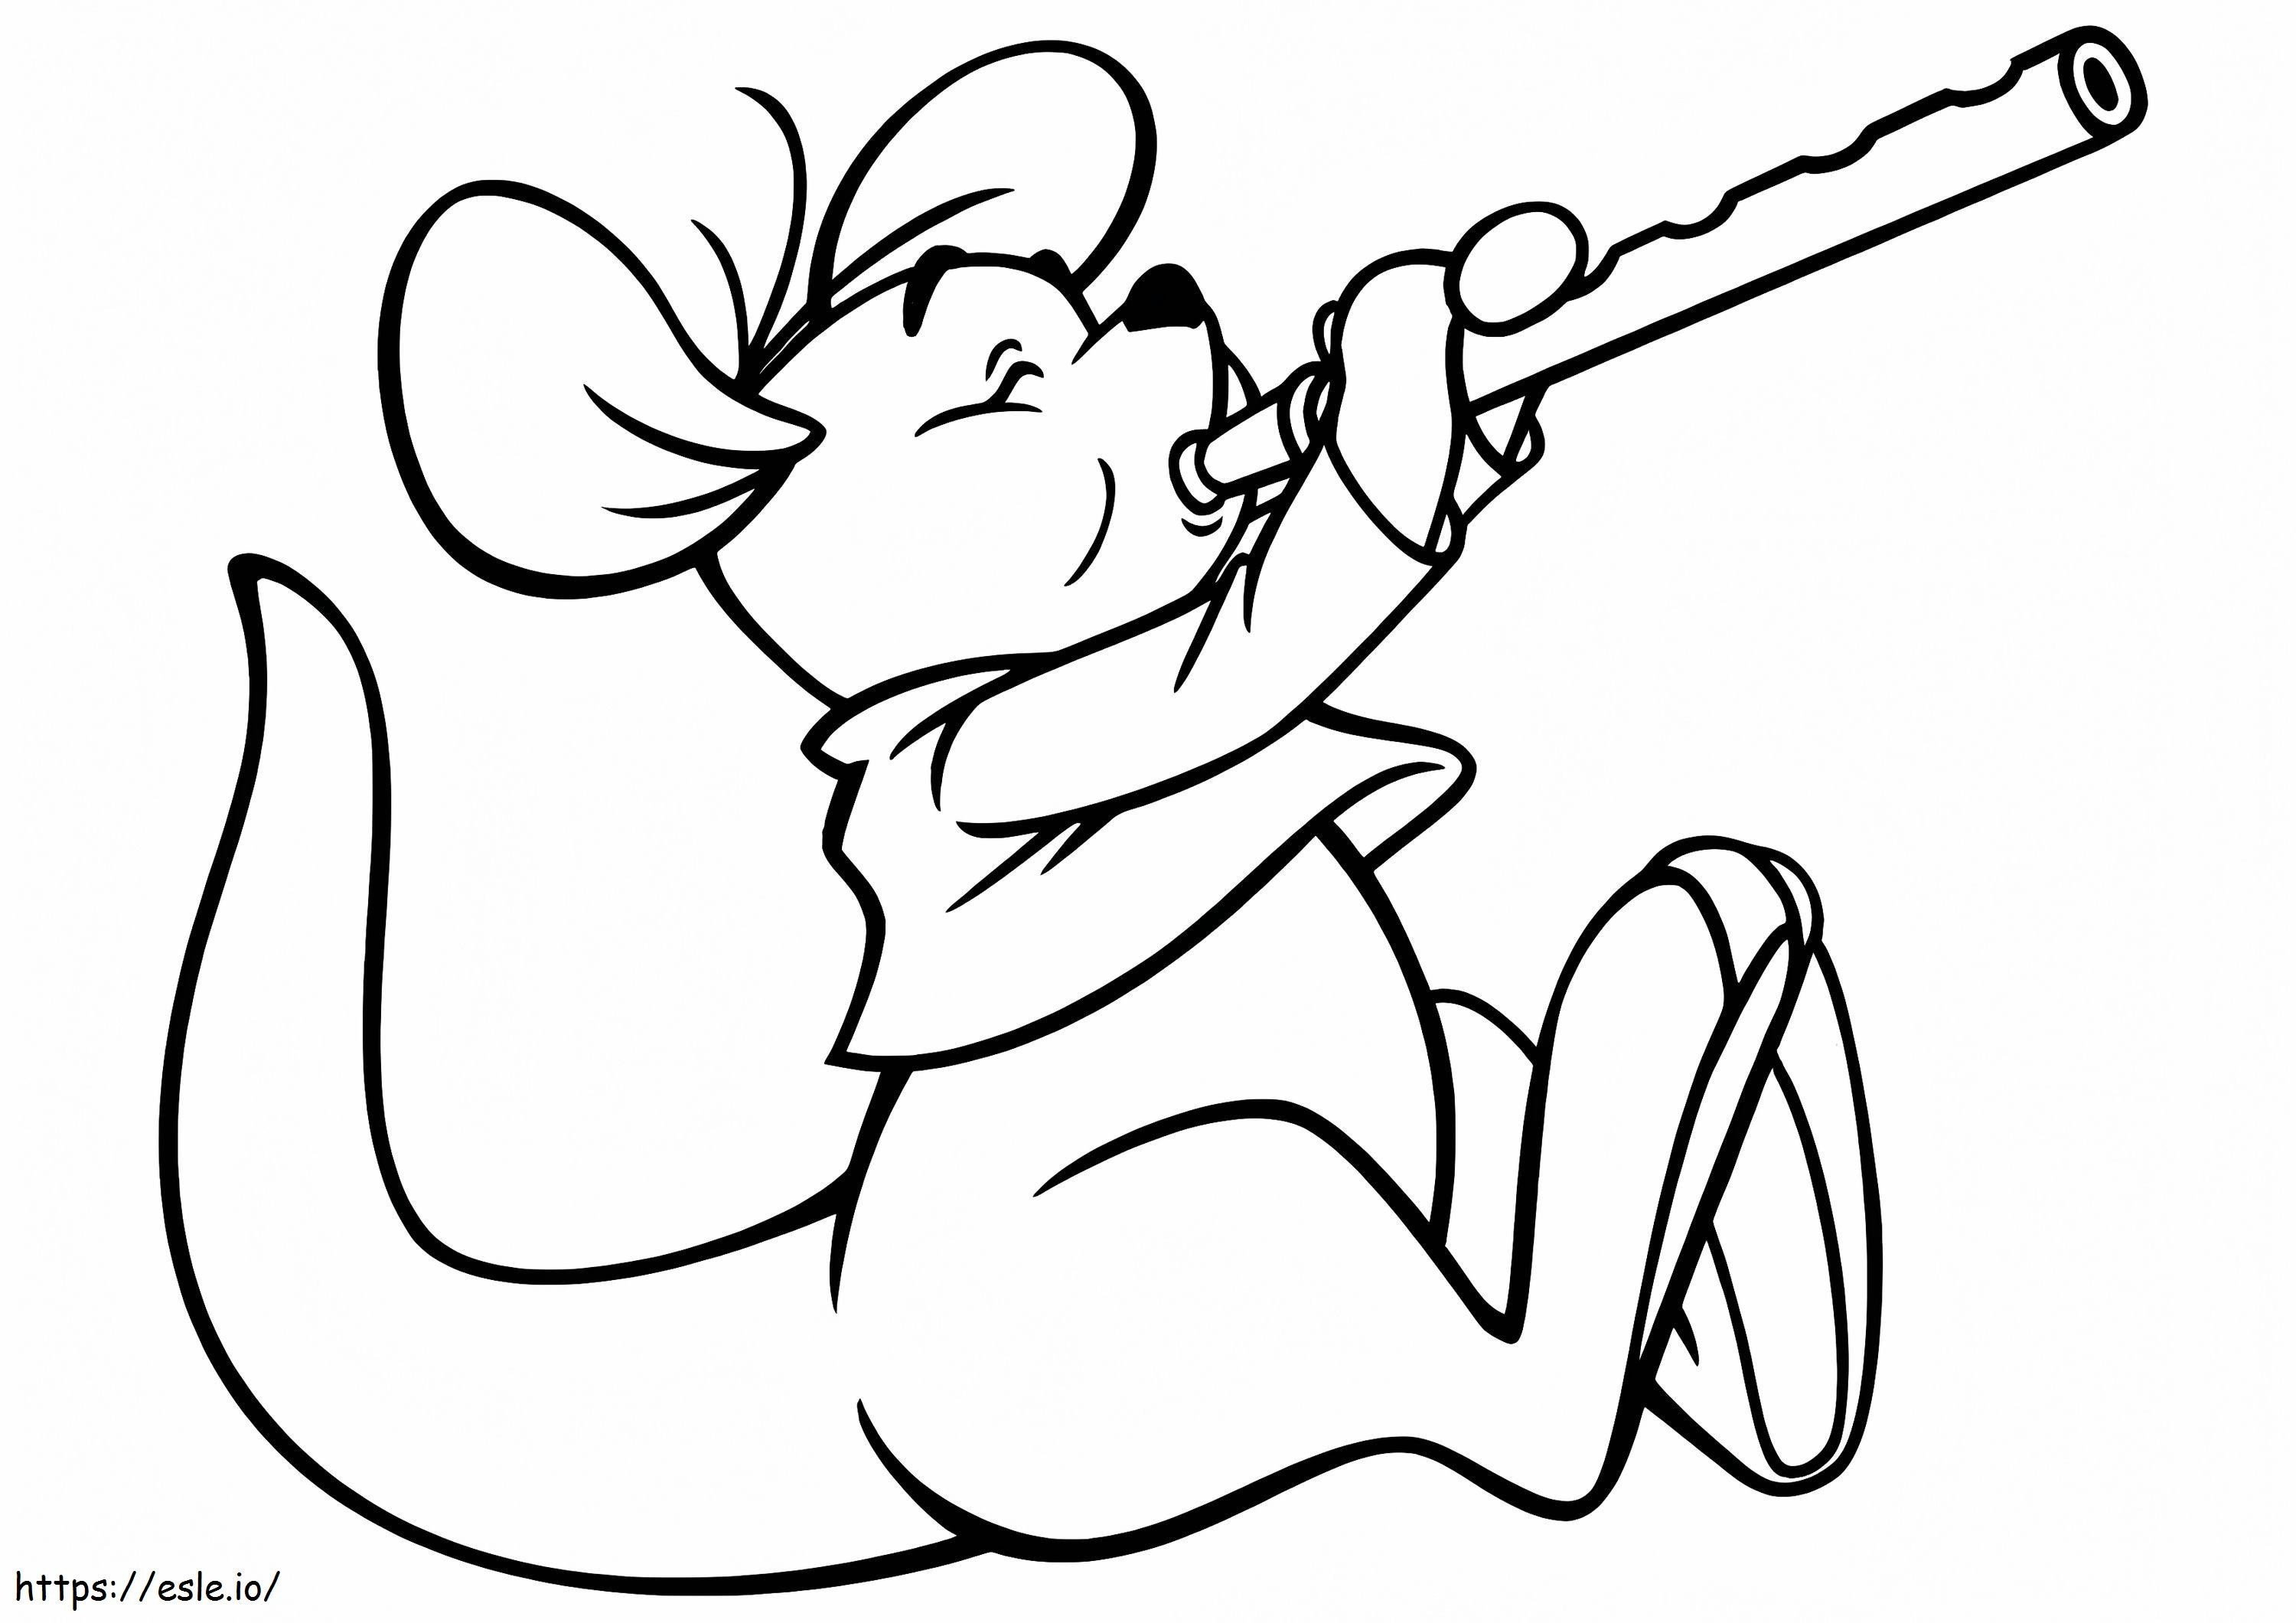 Maus spielt Flöte ausmalbilder